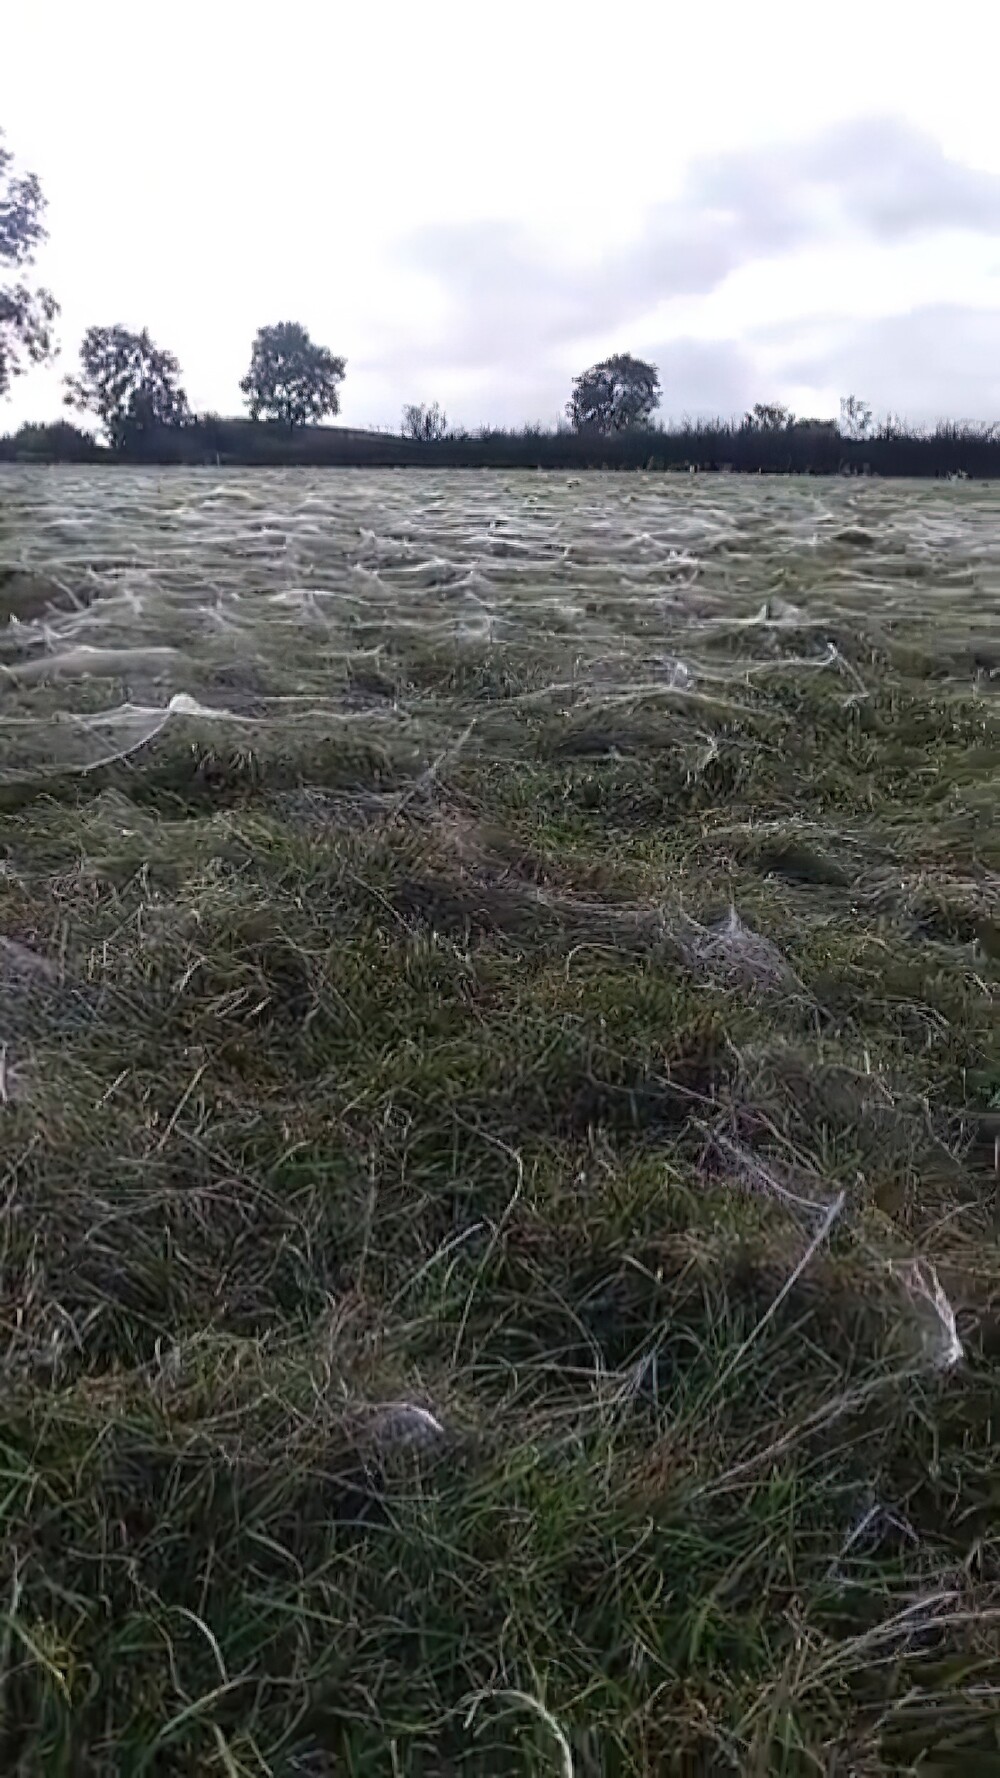 23. Так выглядит нашествие пауков на поле в Англии